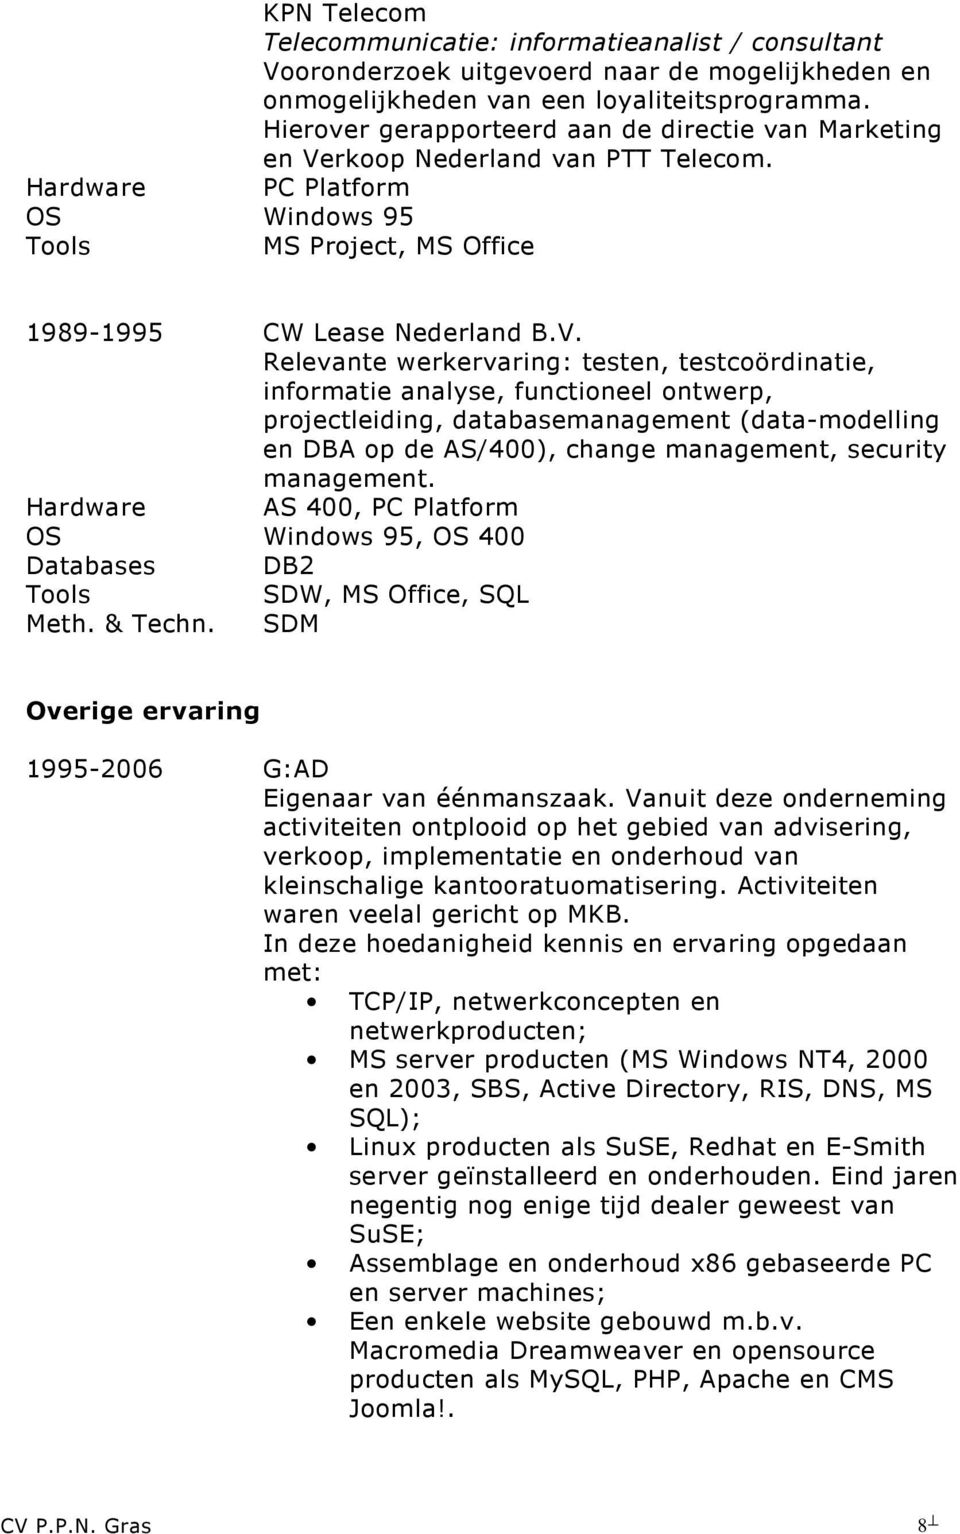 rkoop Nederland van PTT Telecom. OS Windows 95 1989-1995 CW Lease Nederland B.V.